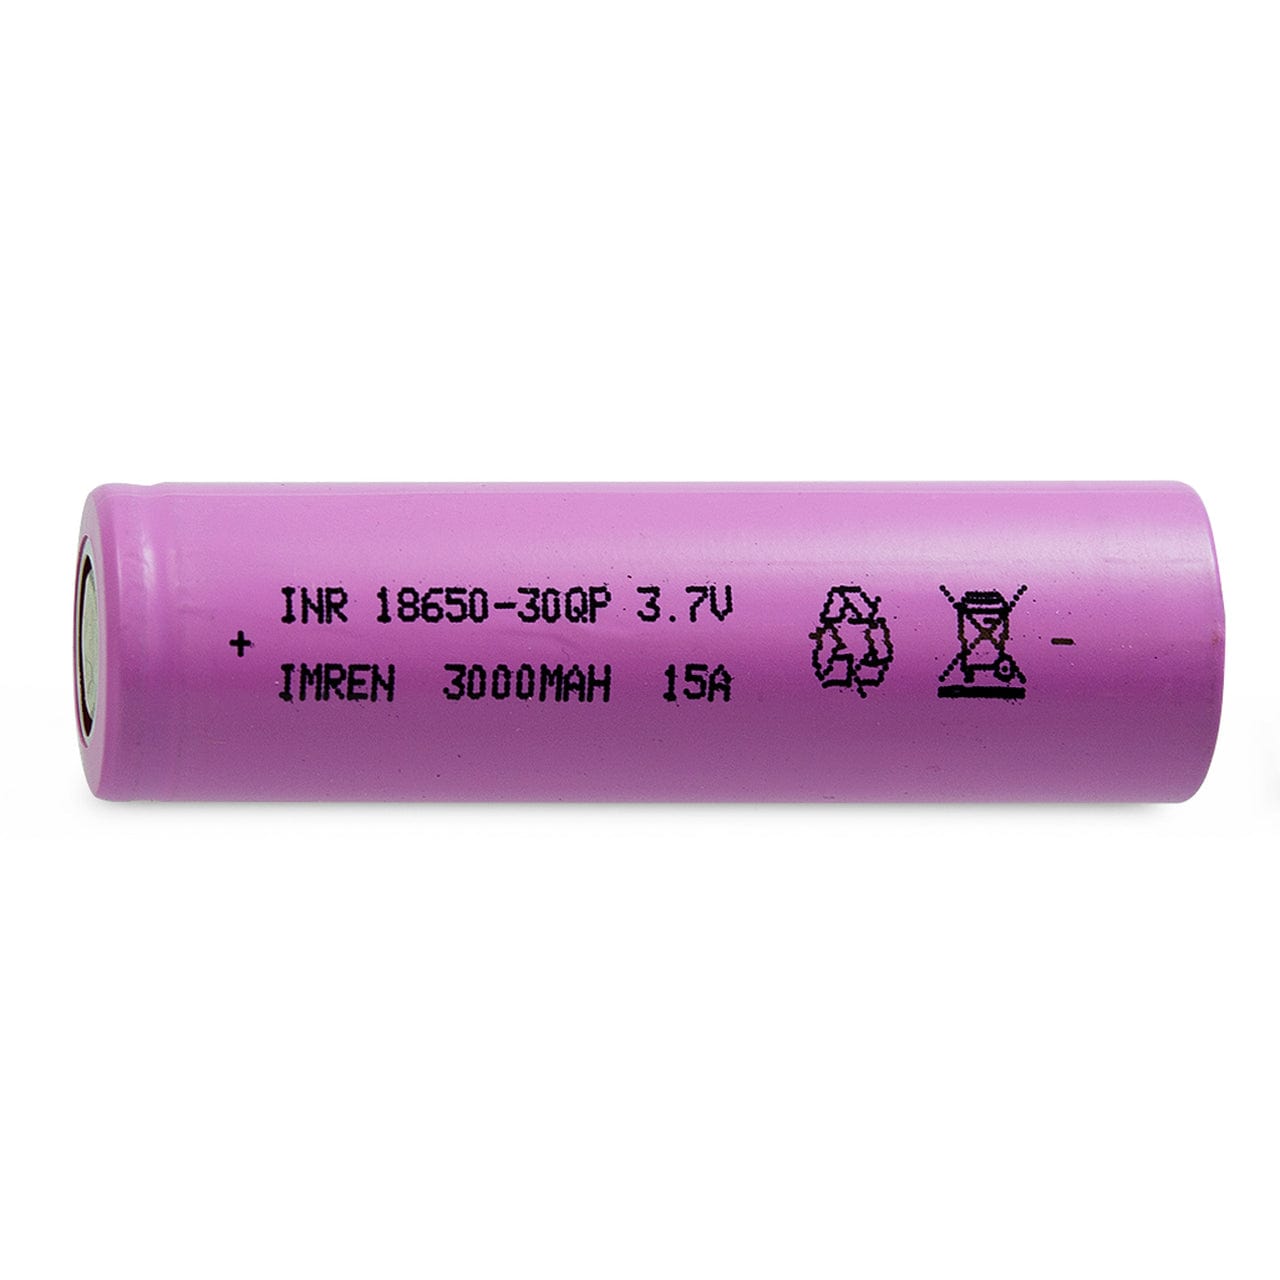 IMREN 30QP 18650 3000mAh 15A Battery (1x Pack)